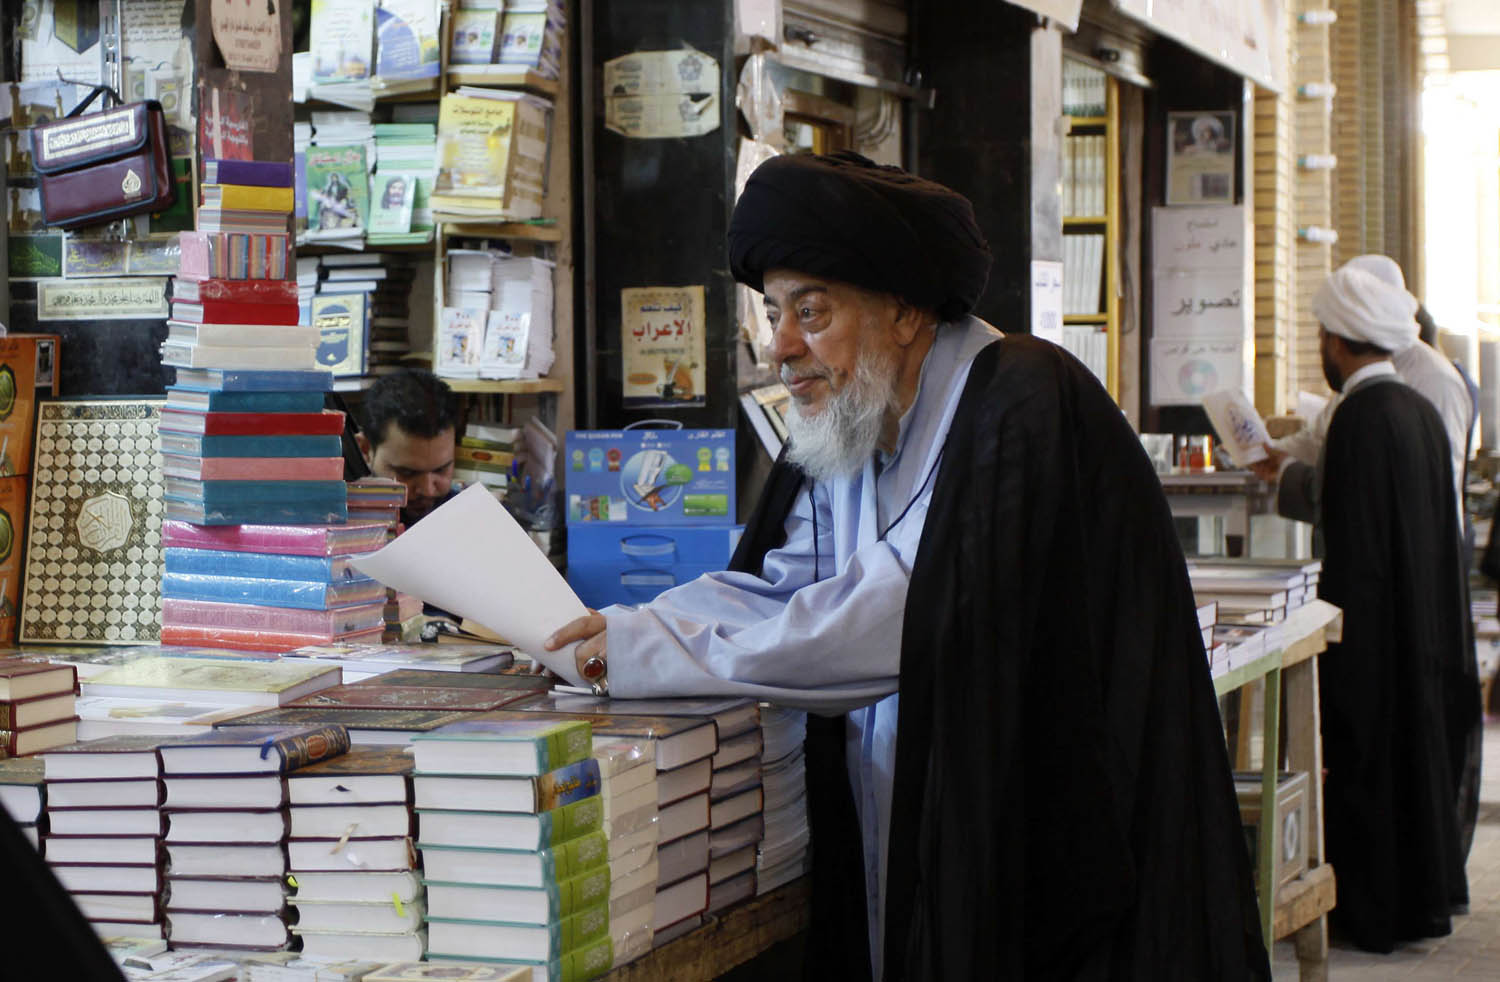 رجل دين يقف عند مكتبة تبيع كتبا دينية في النجف